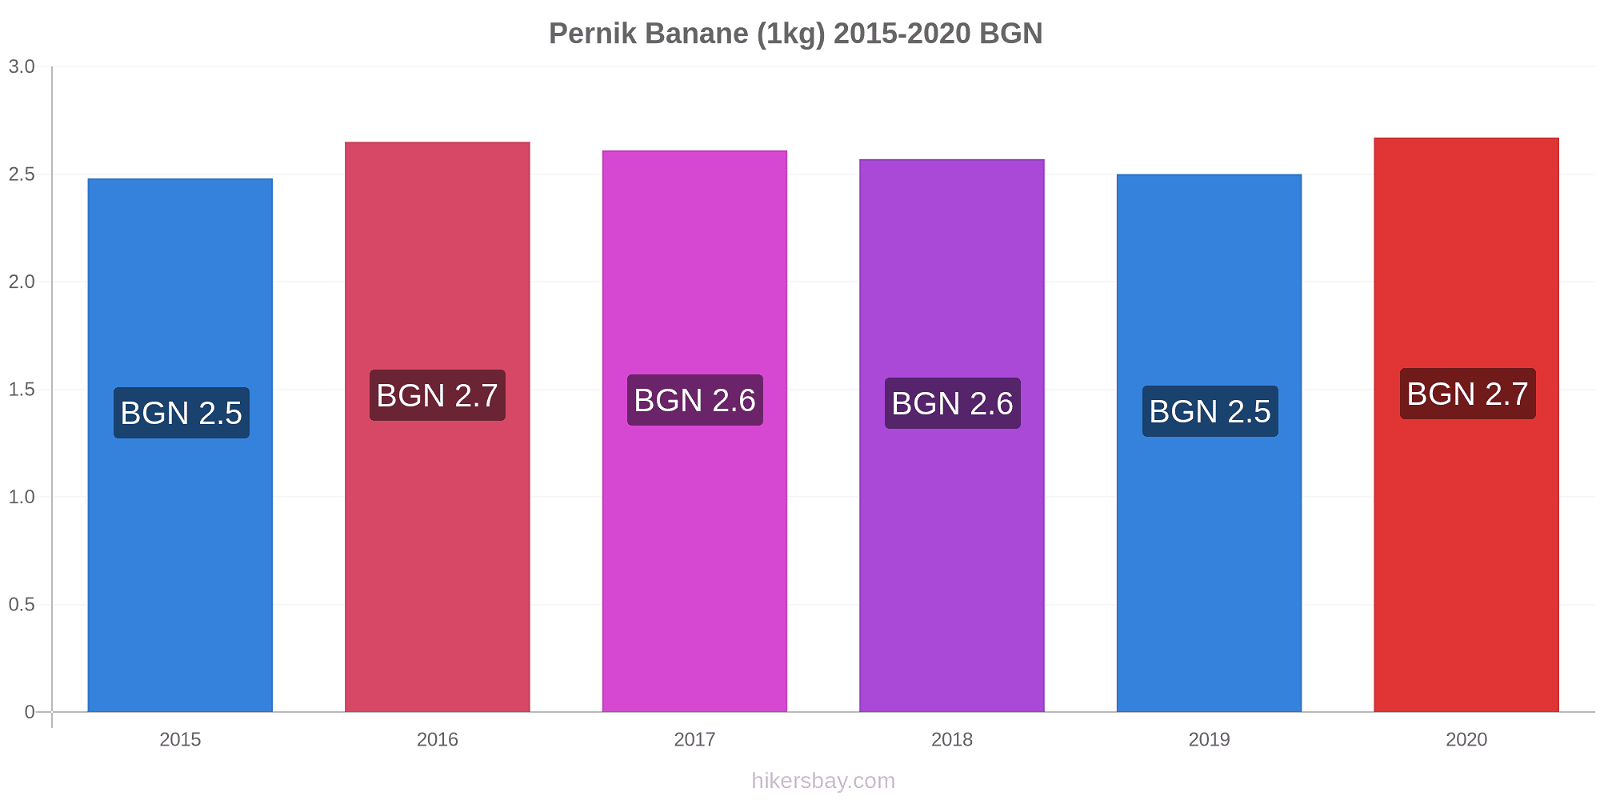 Pernik variazioni di prezzo Banana (1kg) hikersbay.com